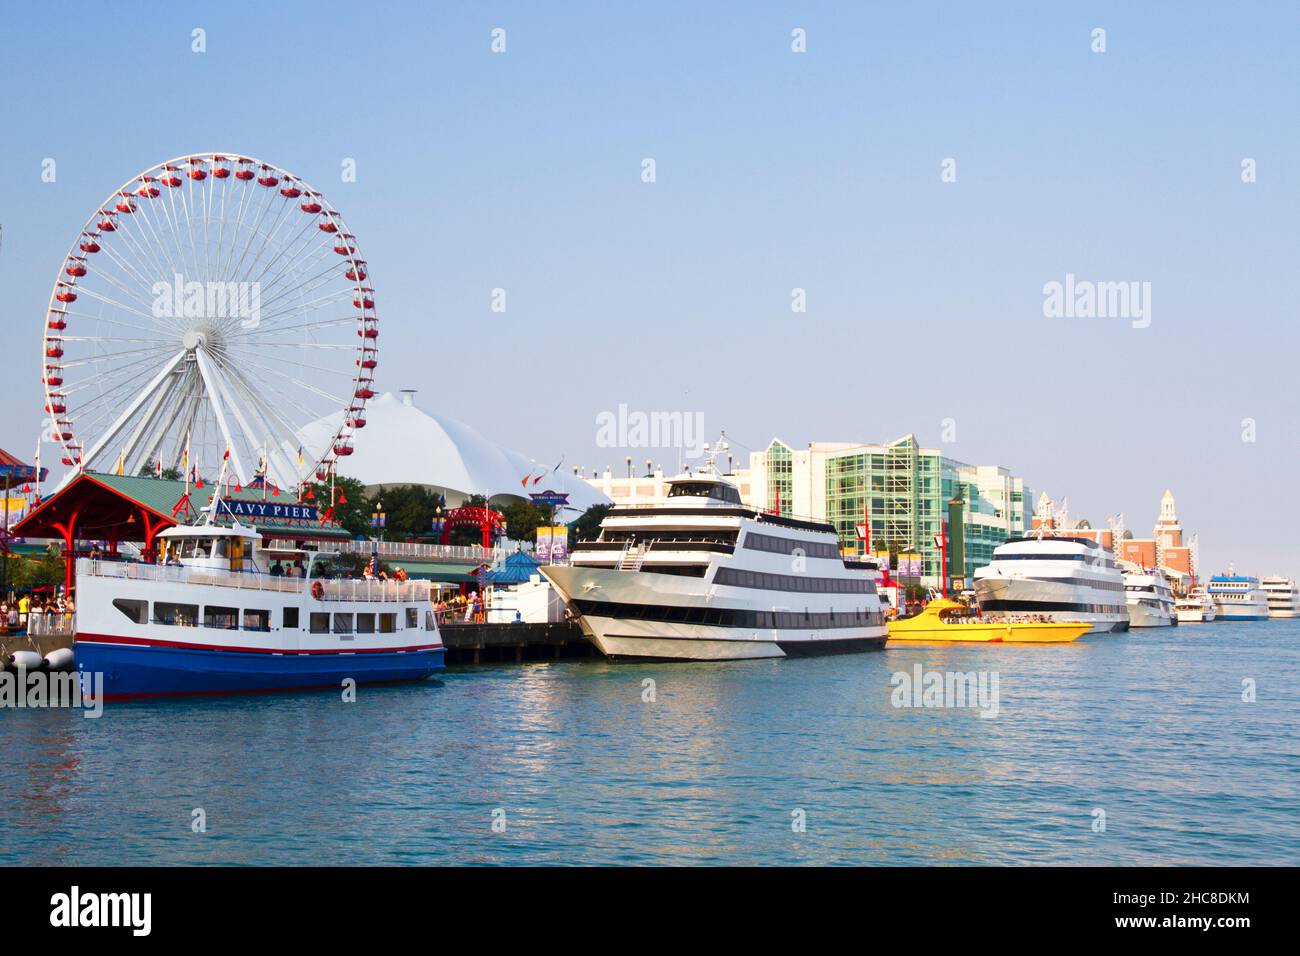 Navy Pier con rueda de Ferris Chicago Harbor Illinois, EE.UU. -- Portal Editing Team seleccionó esta imagen para Photodisc. Foto de stock